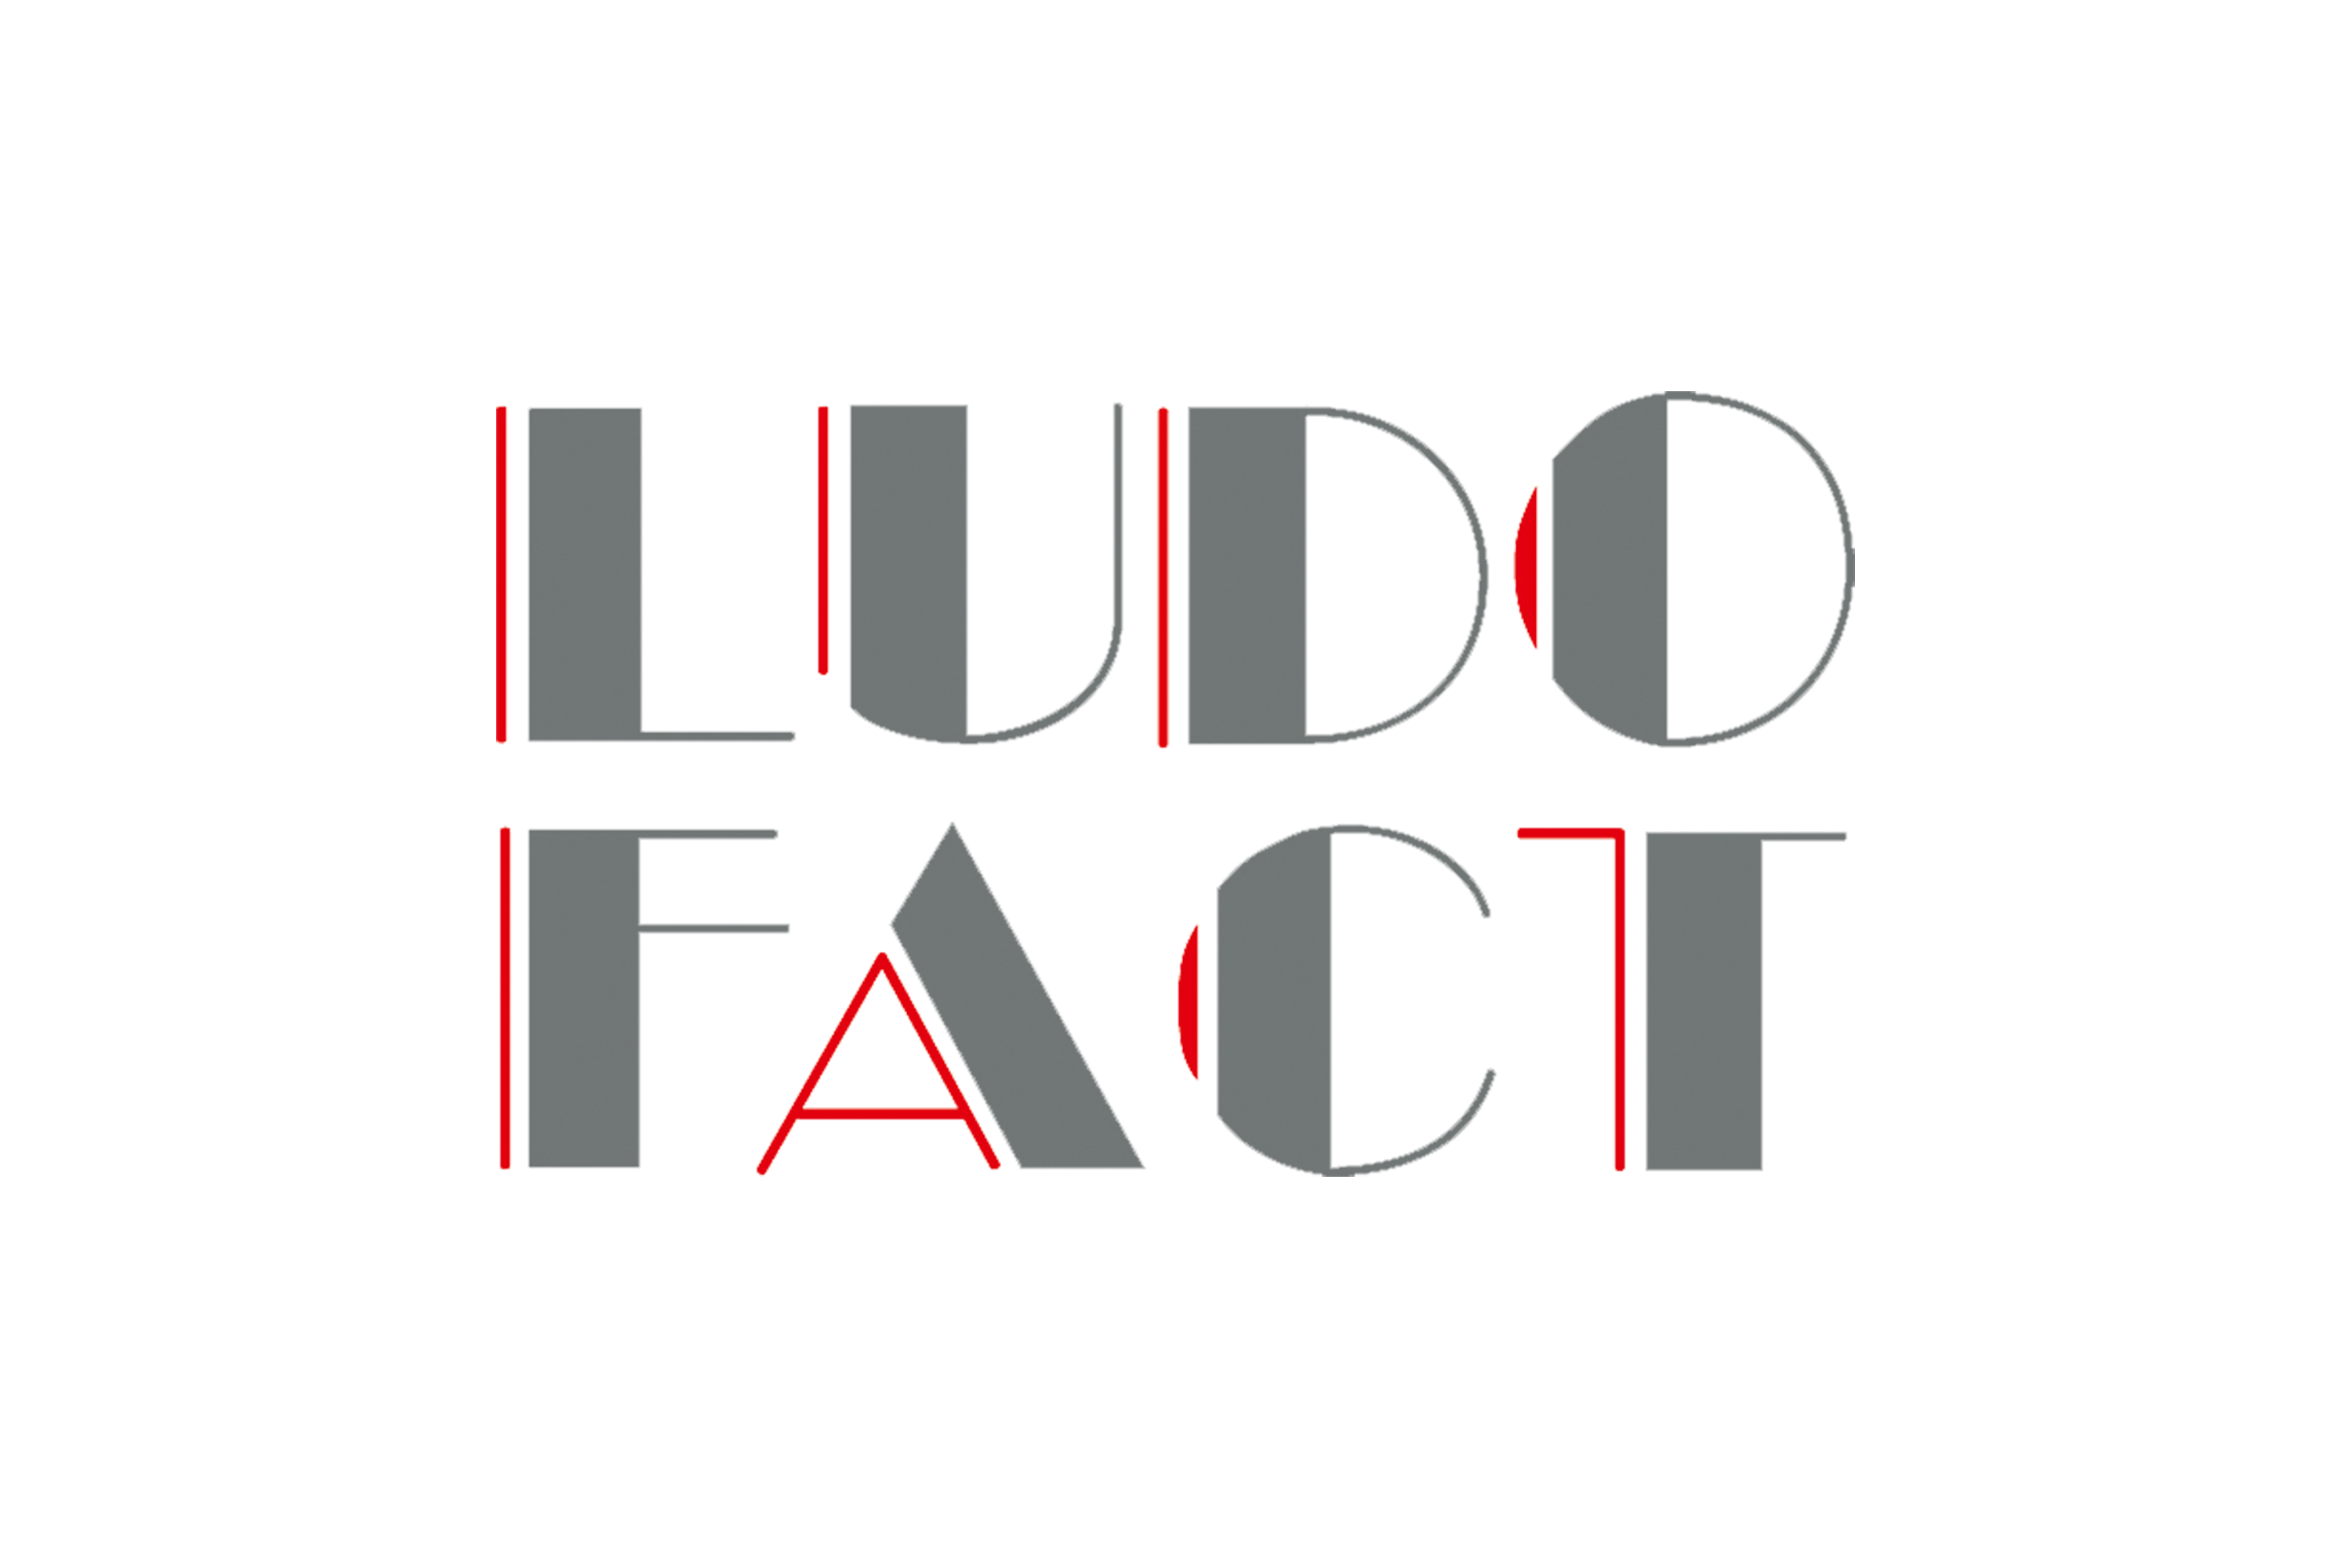 Ludo Fact GmbH Logo